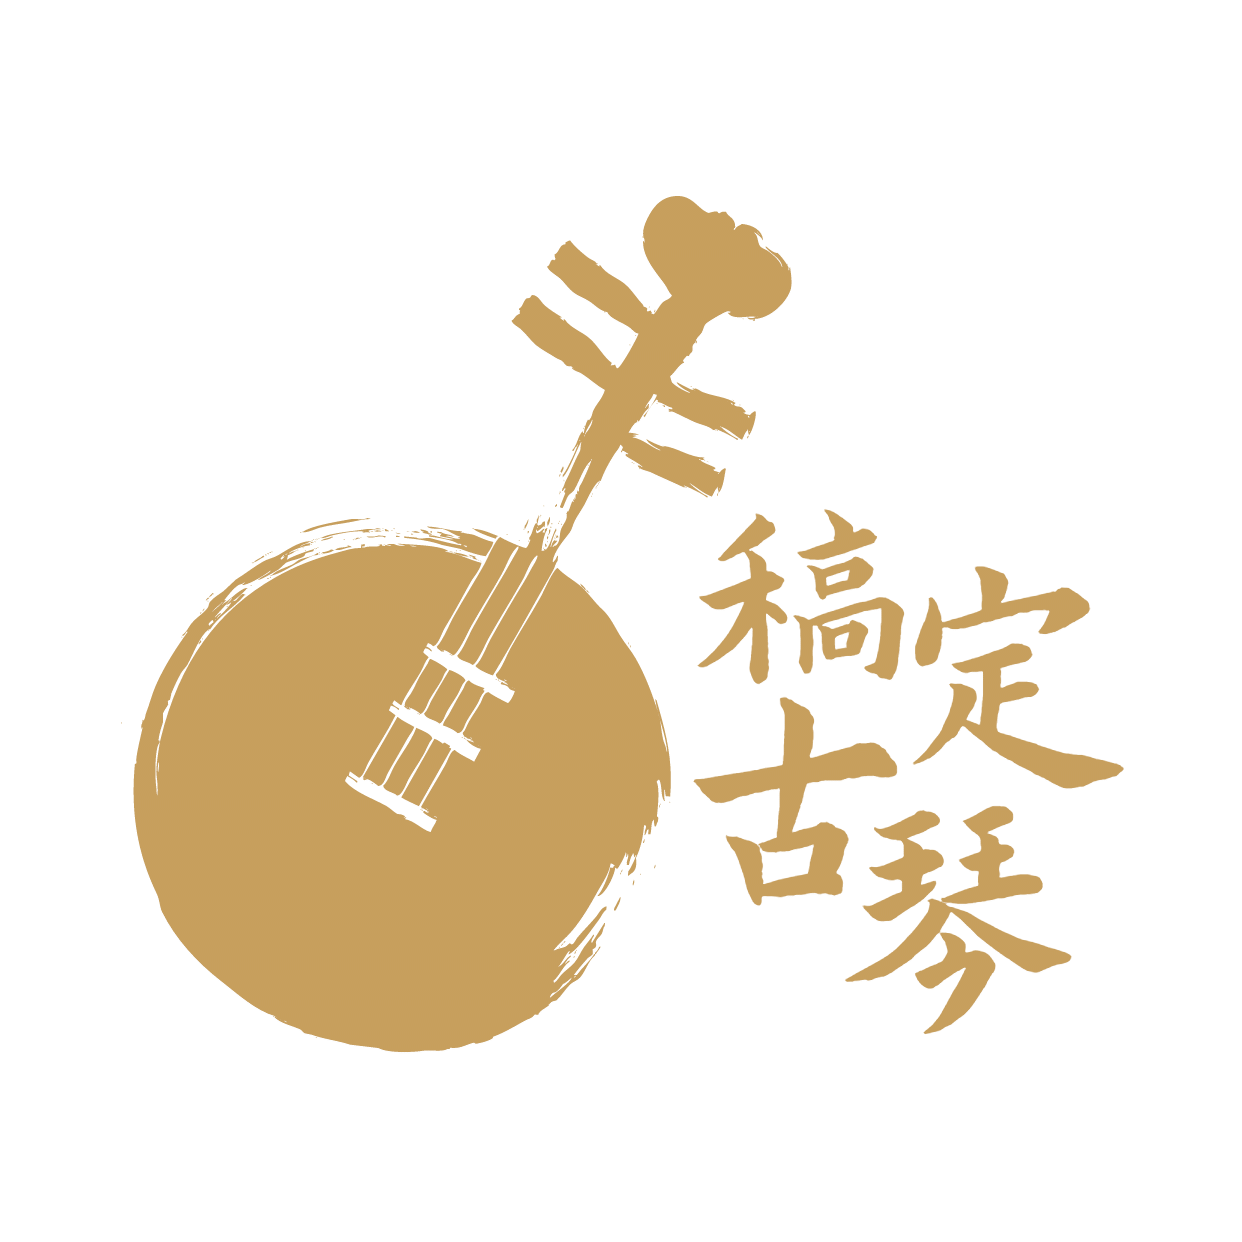 教育培训机构古琴店标logo预览效果